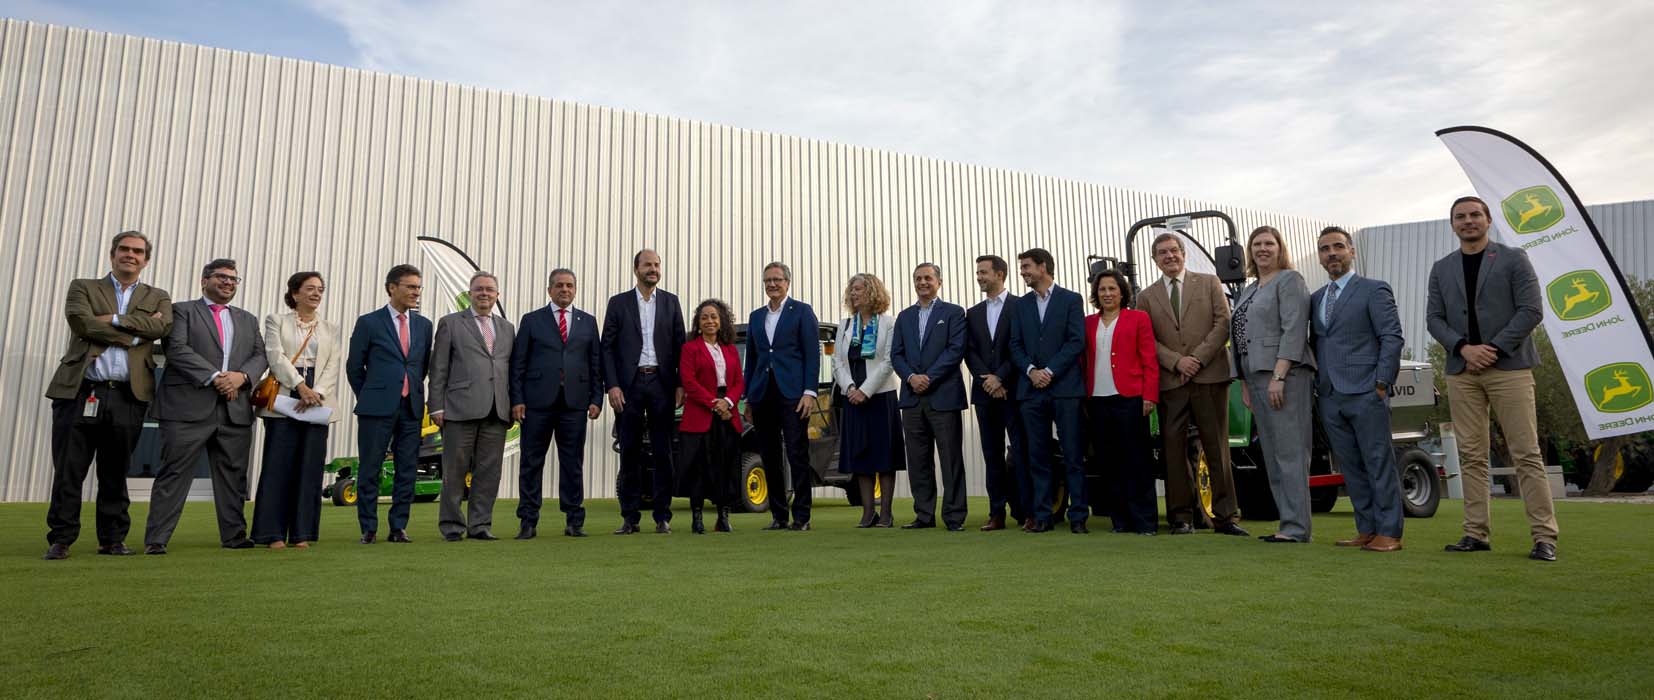 John Deere inaugura en España su primer centro de innovación europeo para cultivos de alto valor